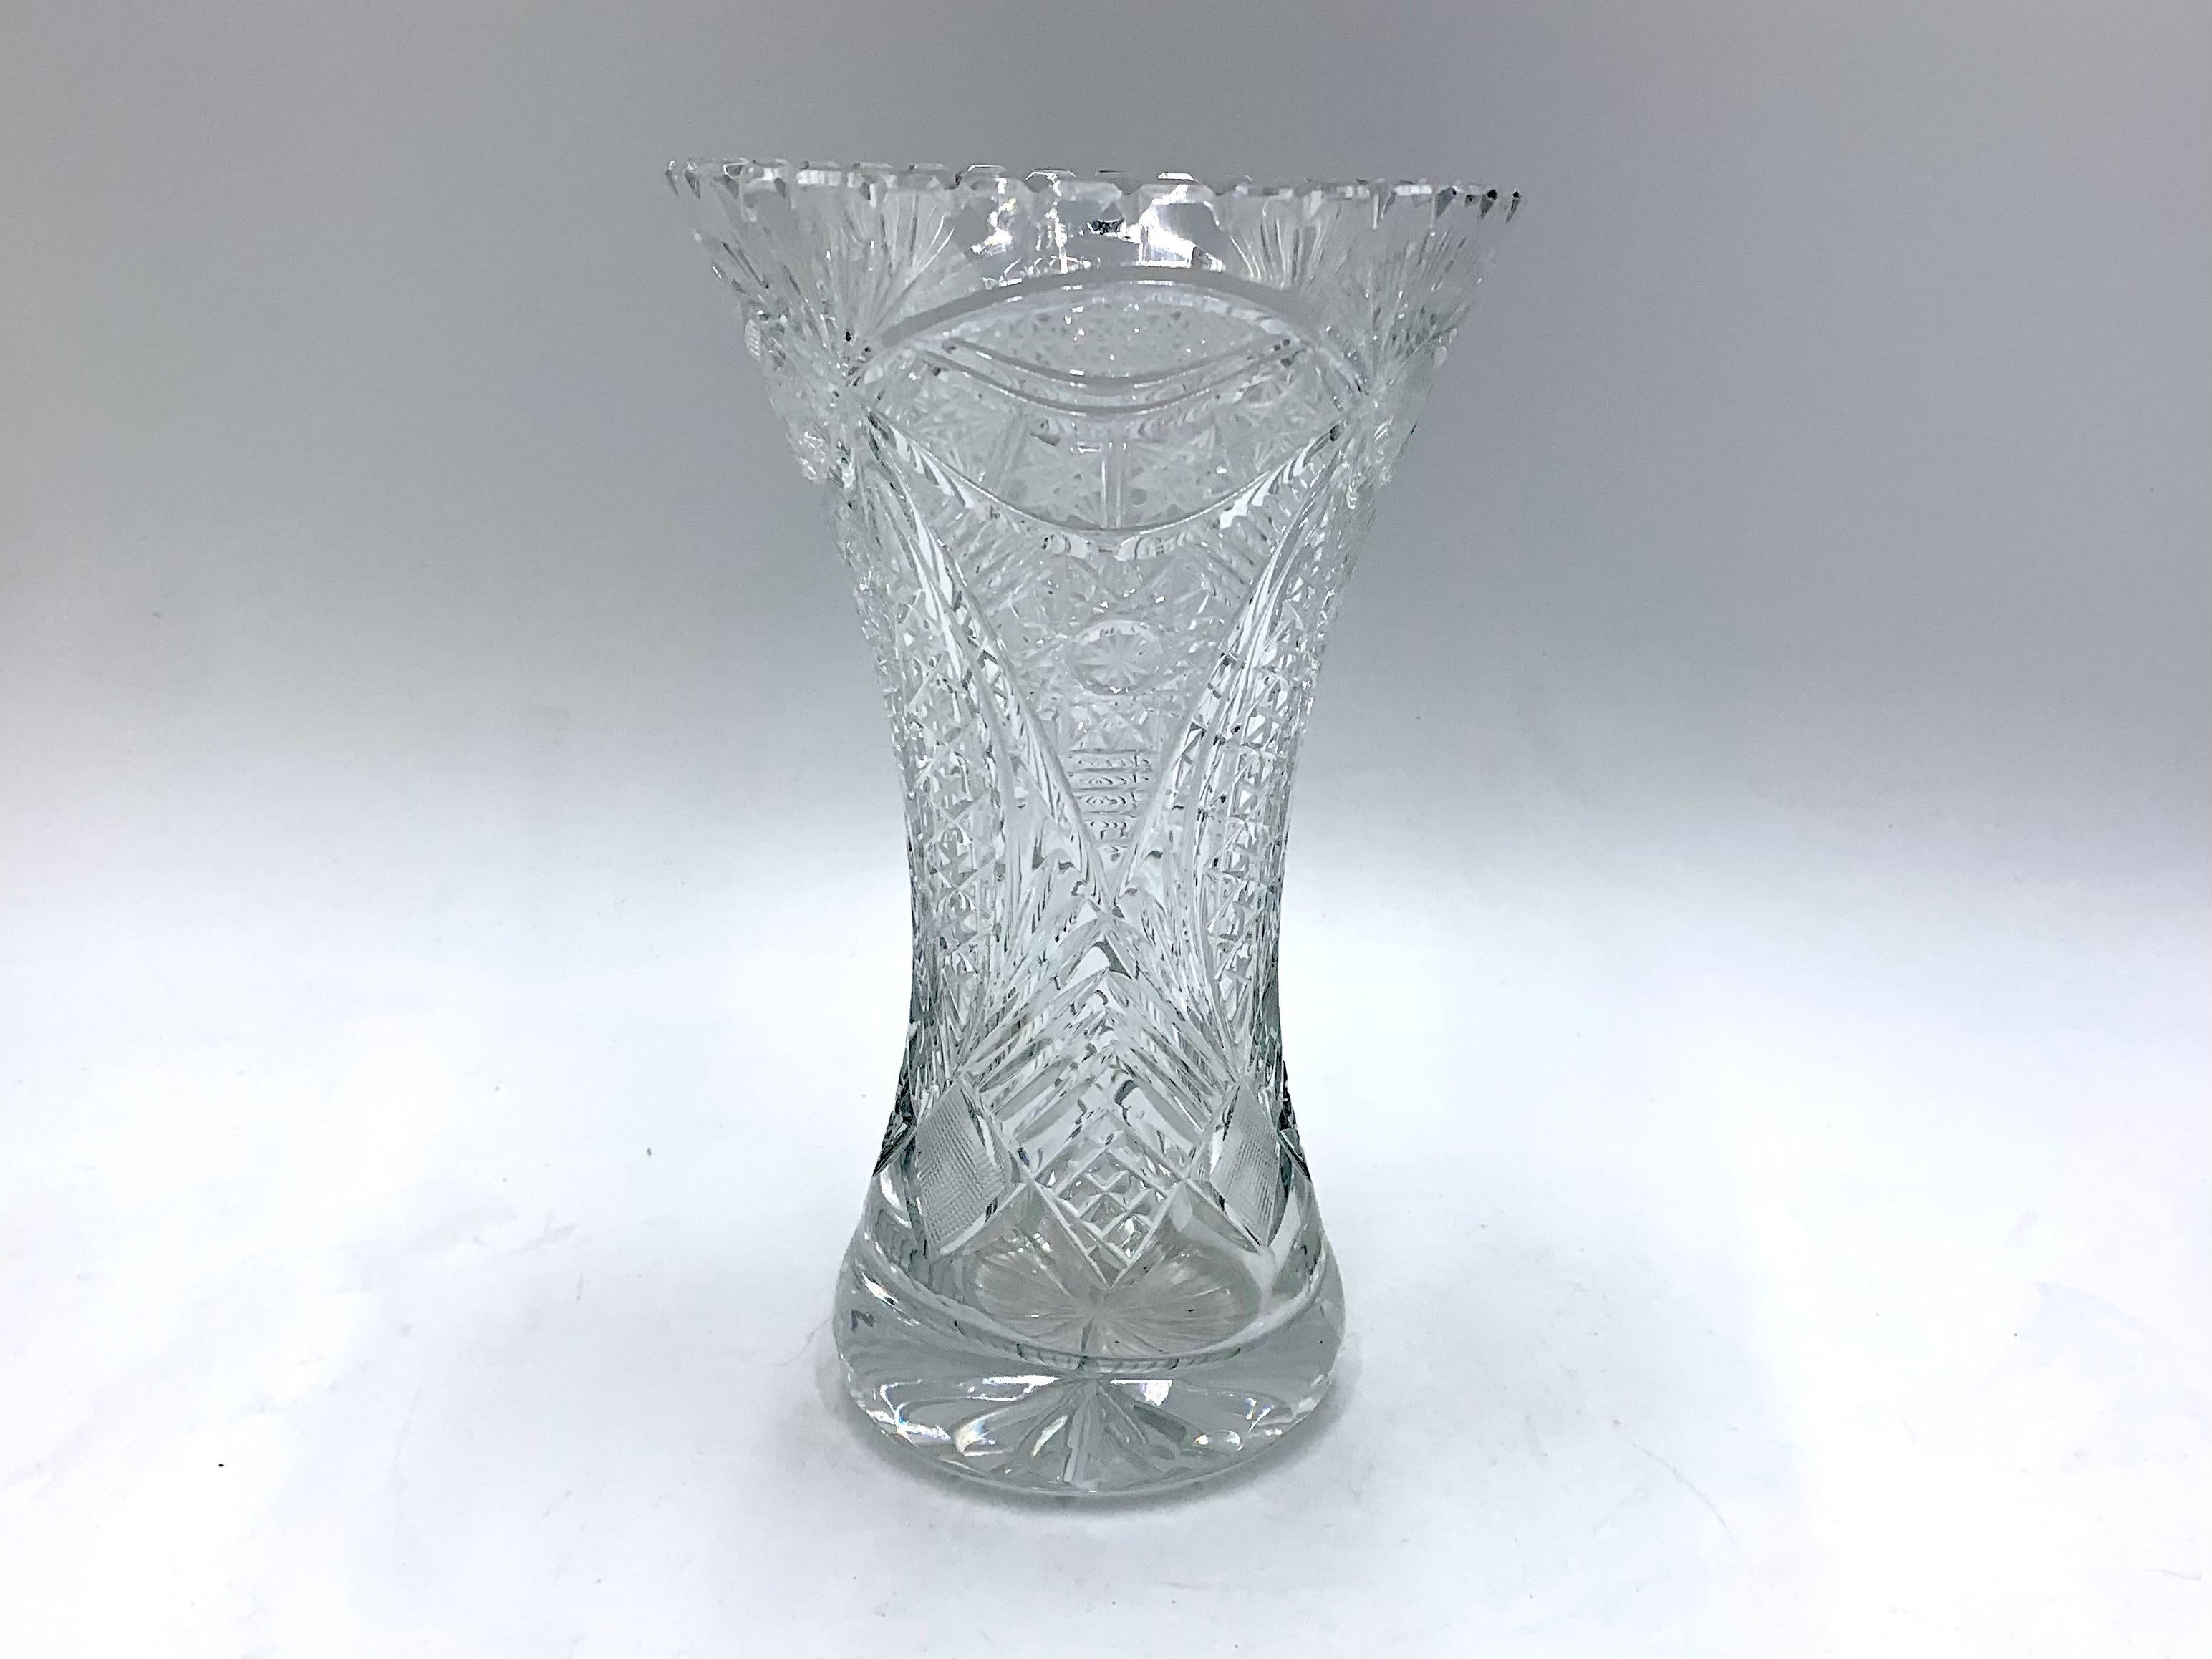 Vase en cristal. Ce vase a été produit en Pologne dans les années 1960 et 1970.
Vase en très bon état
Mesures : Hauteur 22 cm / diamètre 14 cm.